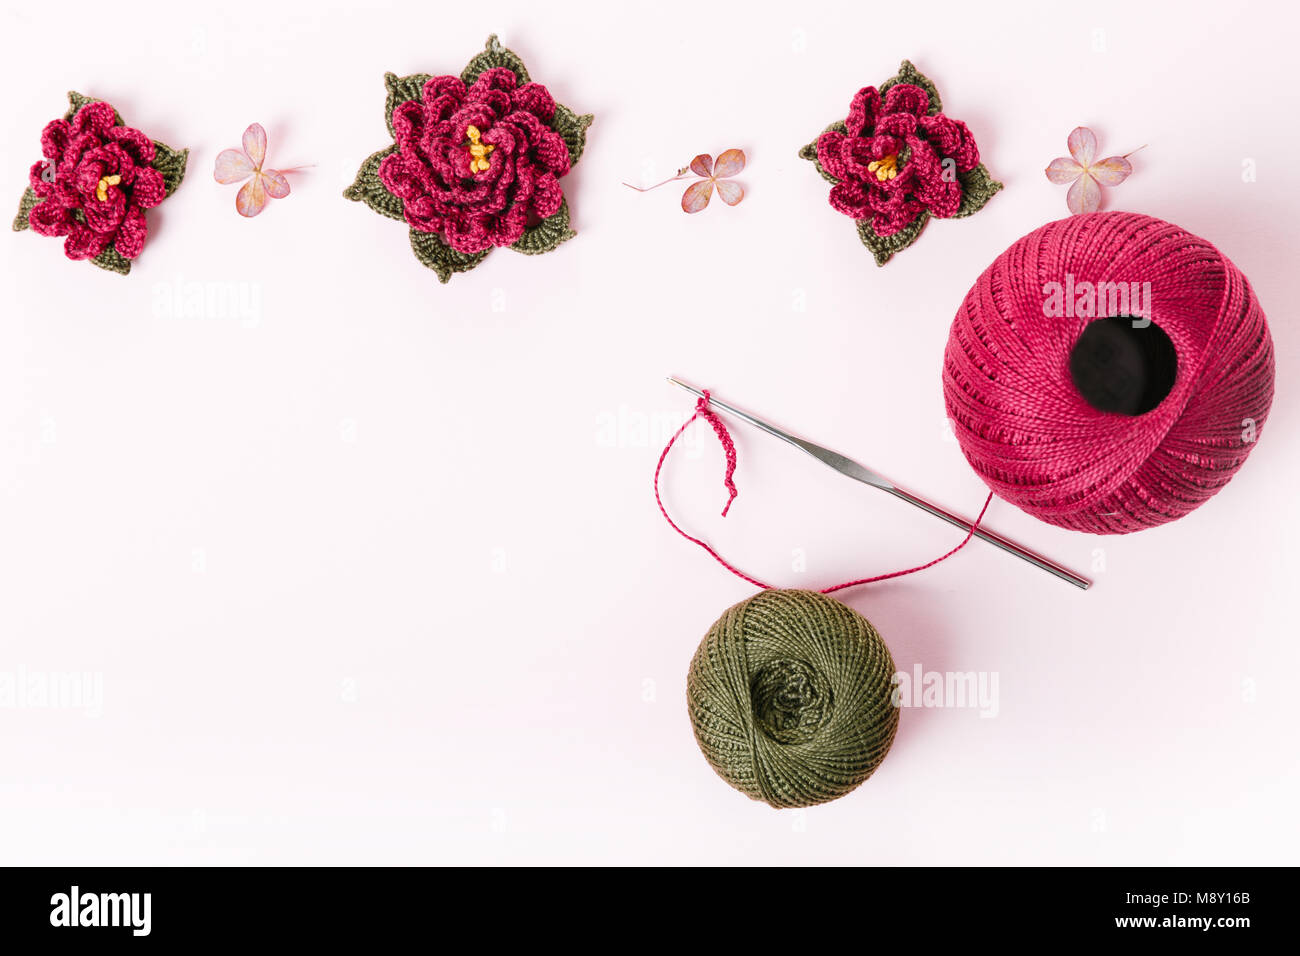 Le rouleau de fil de coton vert et violet et rose au crochet crochet, fleurs, décoration, ornement, Bastet sur fond blanc. Le concept de croch Banque D'Images